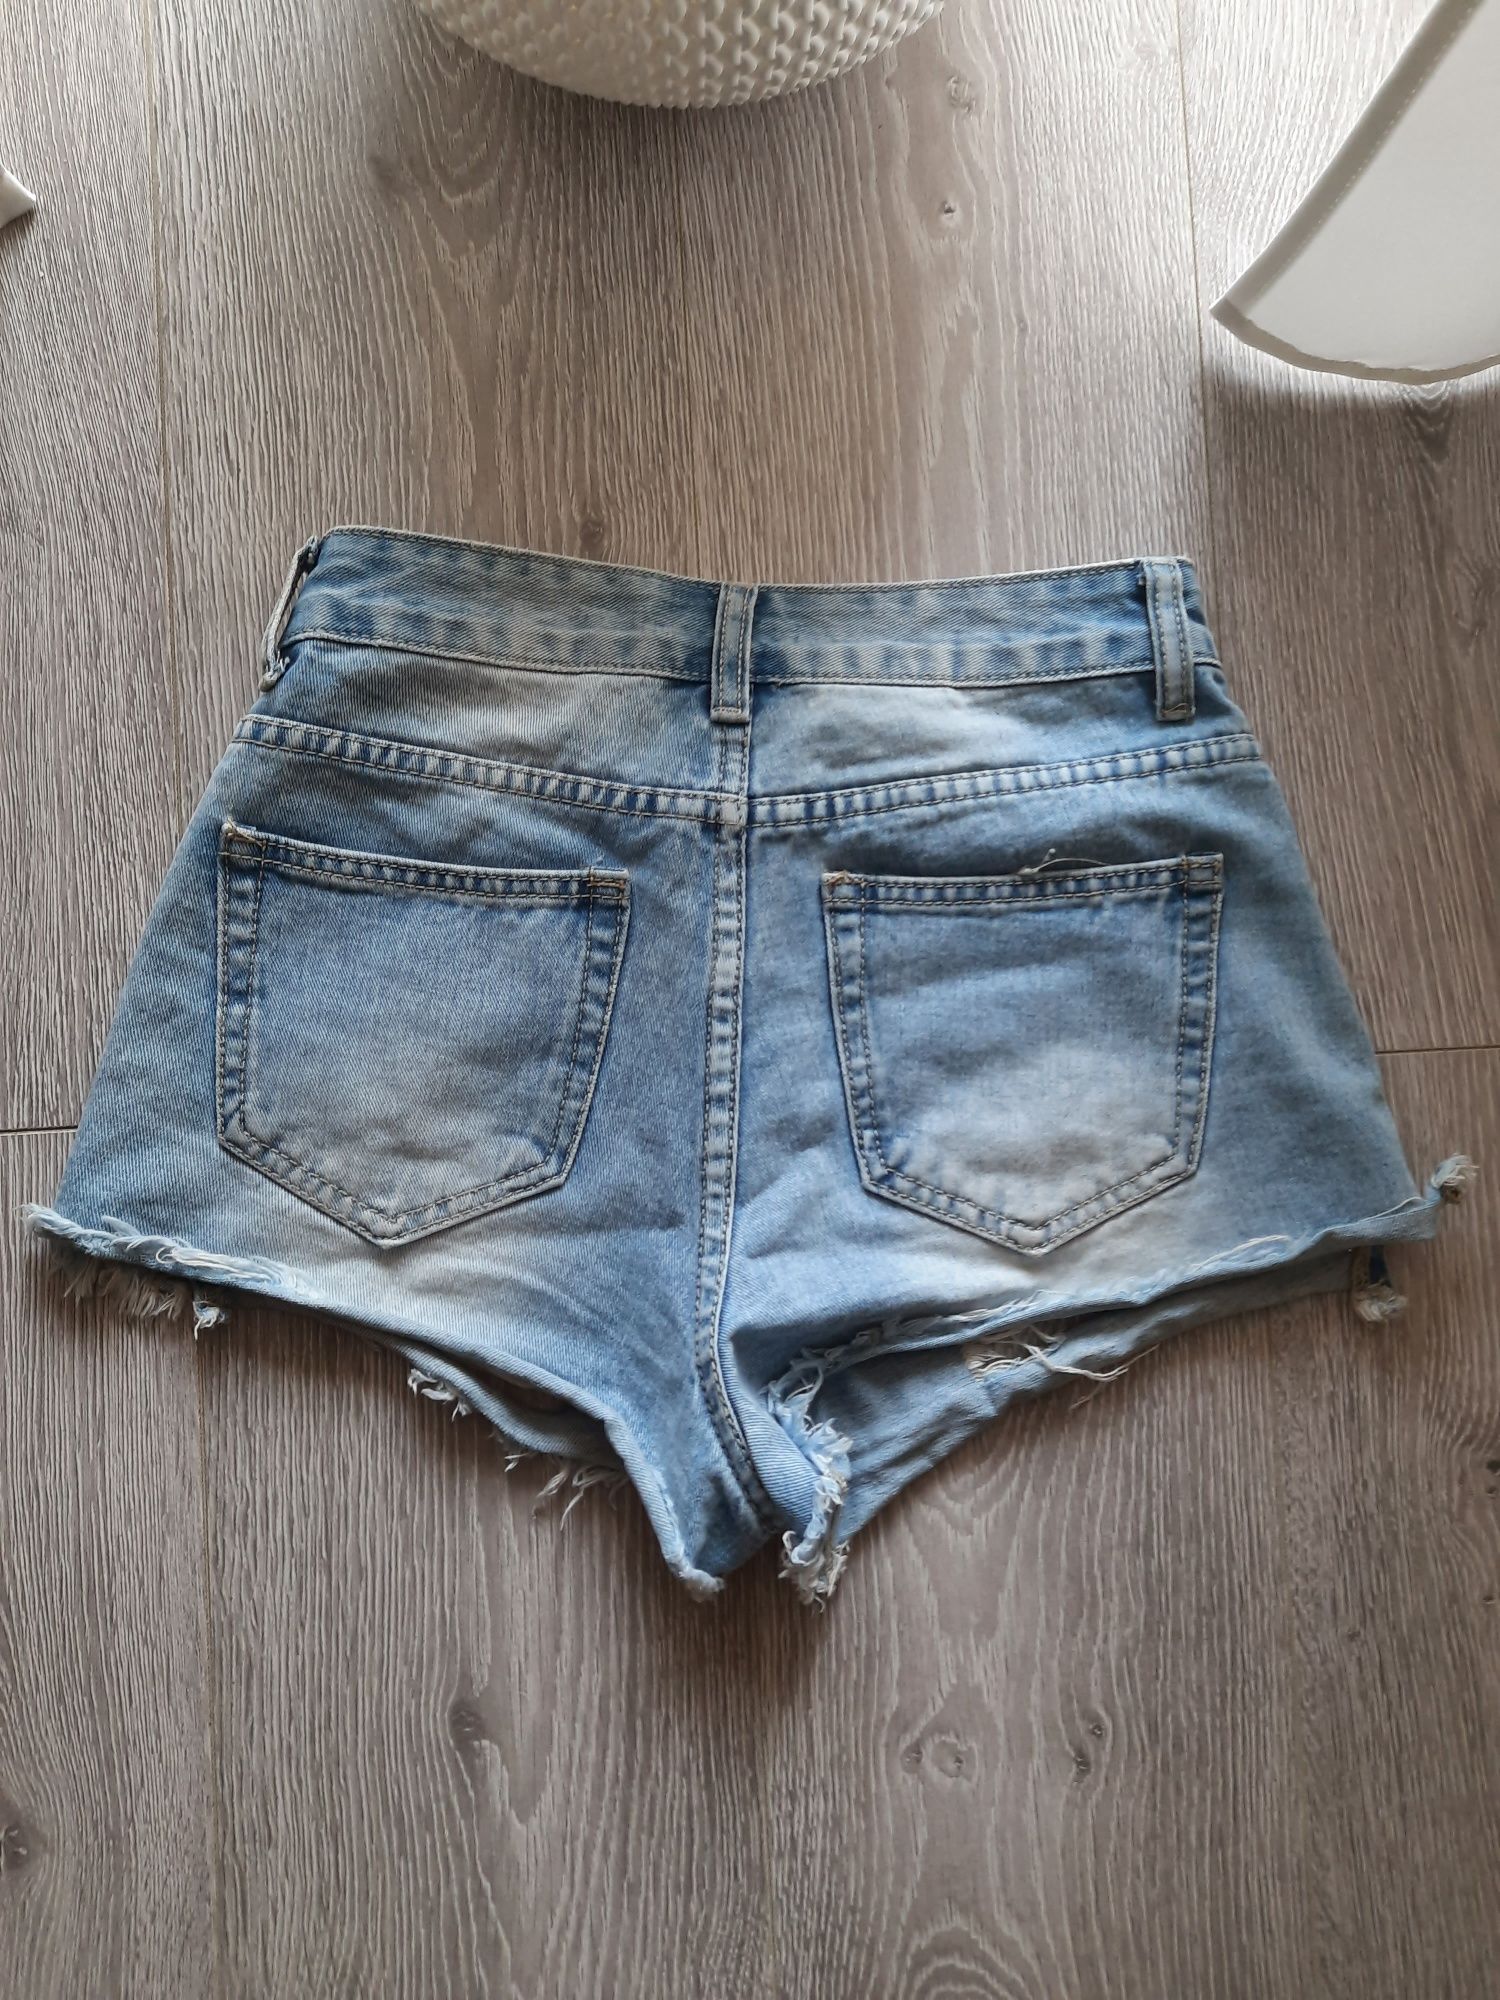 Krótkie brazylijskie szorty spodenki jeansowe s 36Andżela dziury Parczew •  OLX.pl